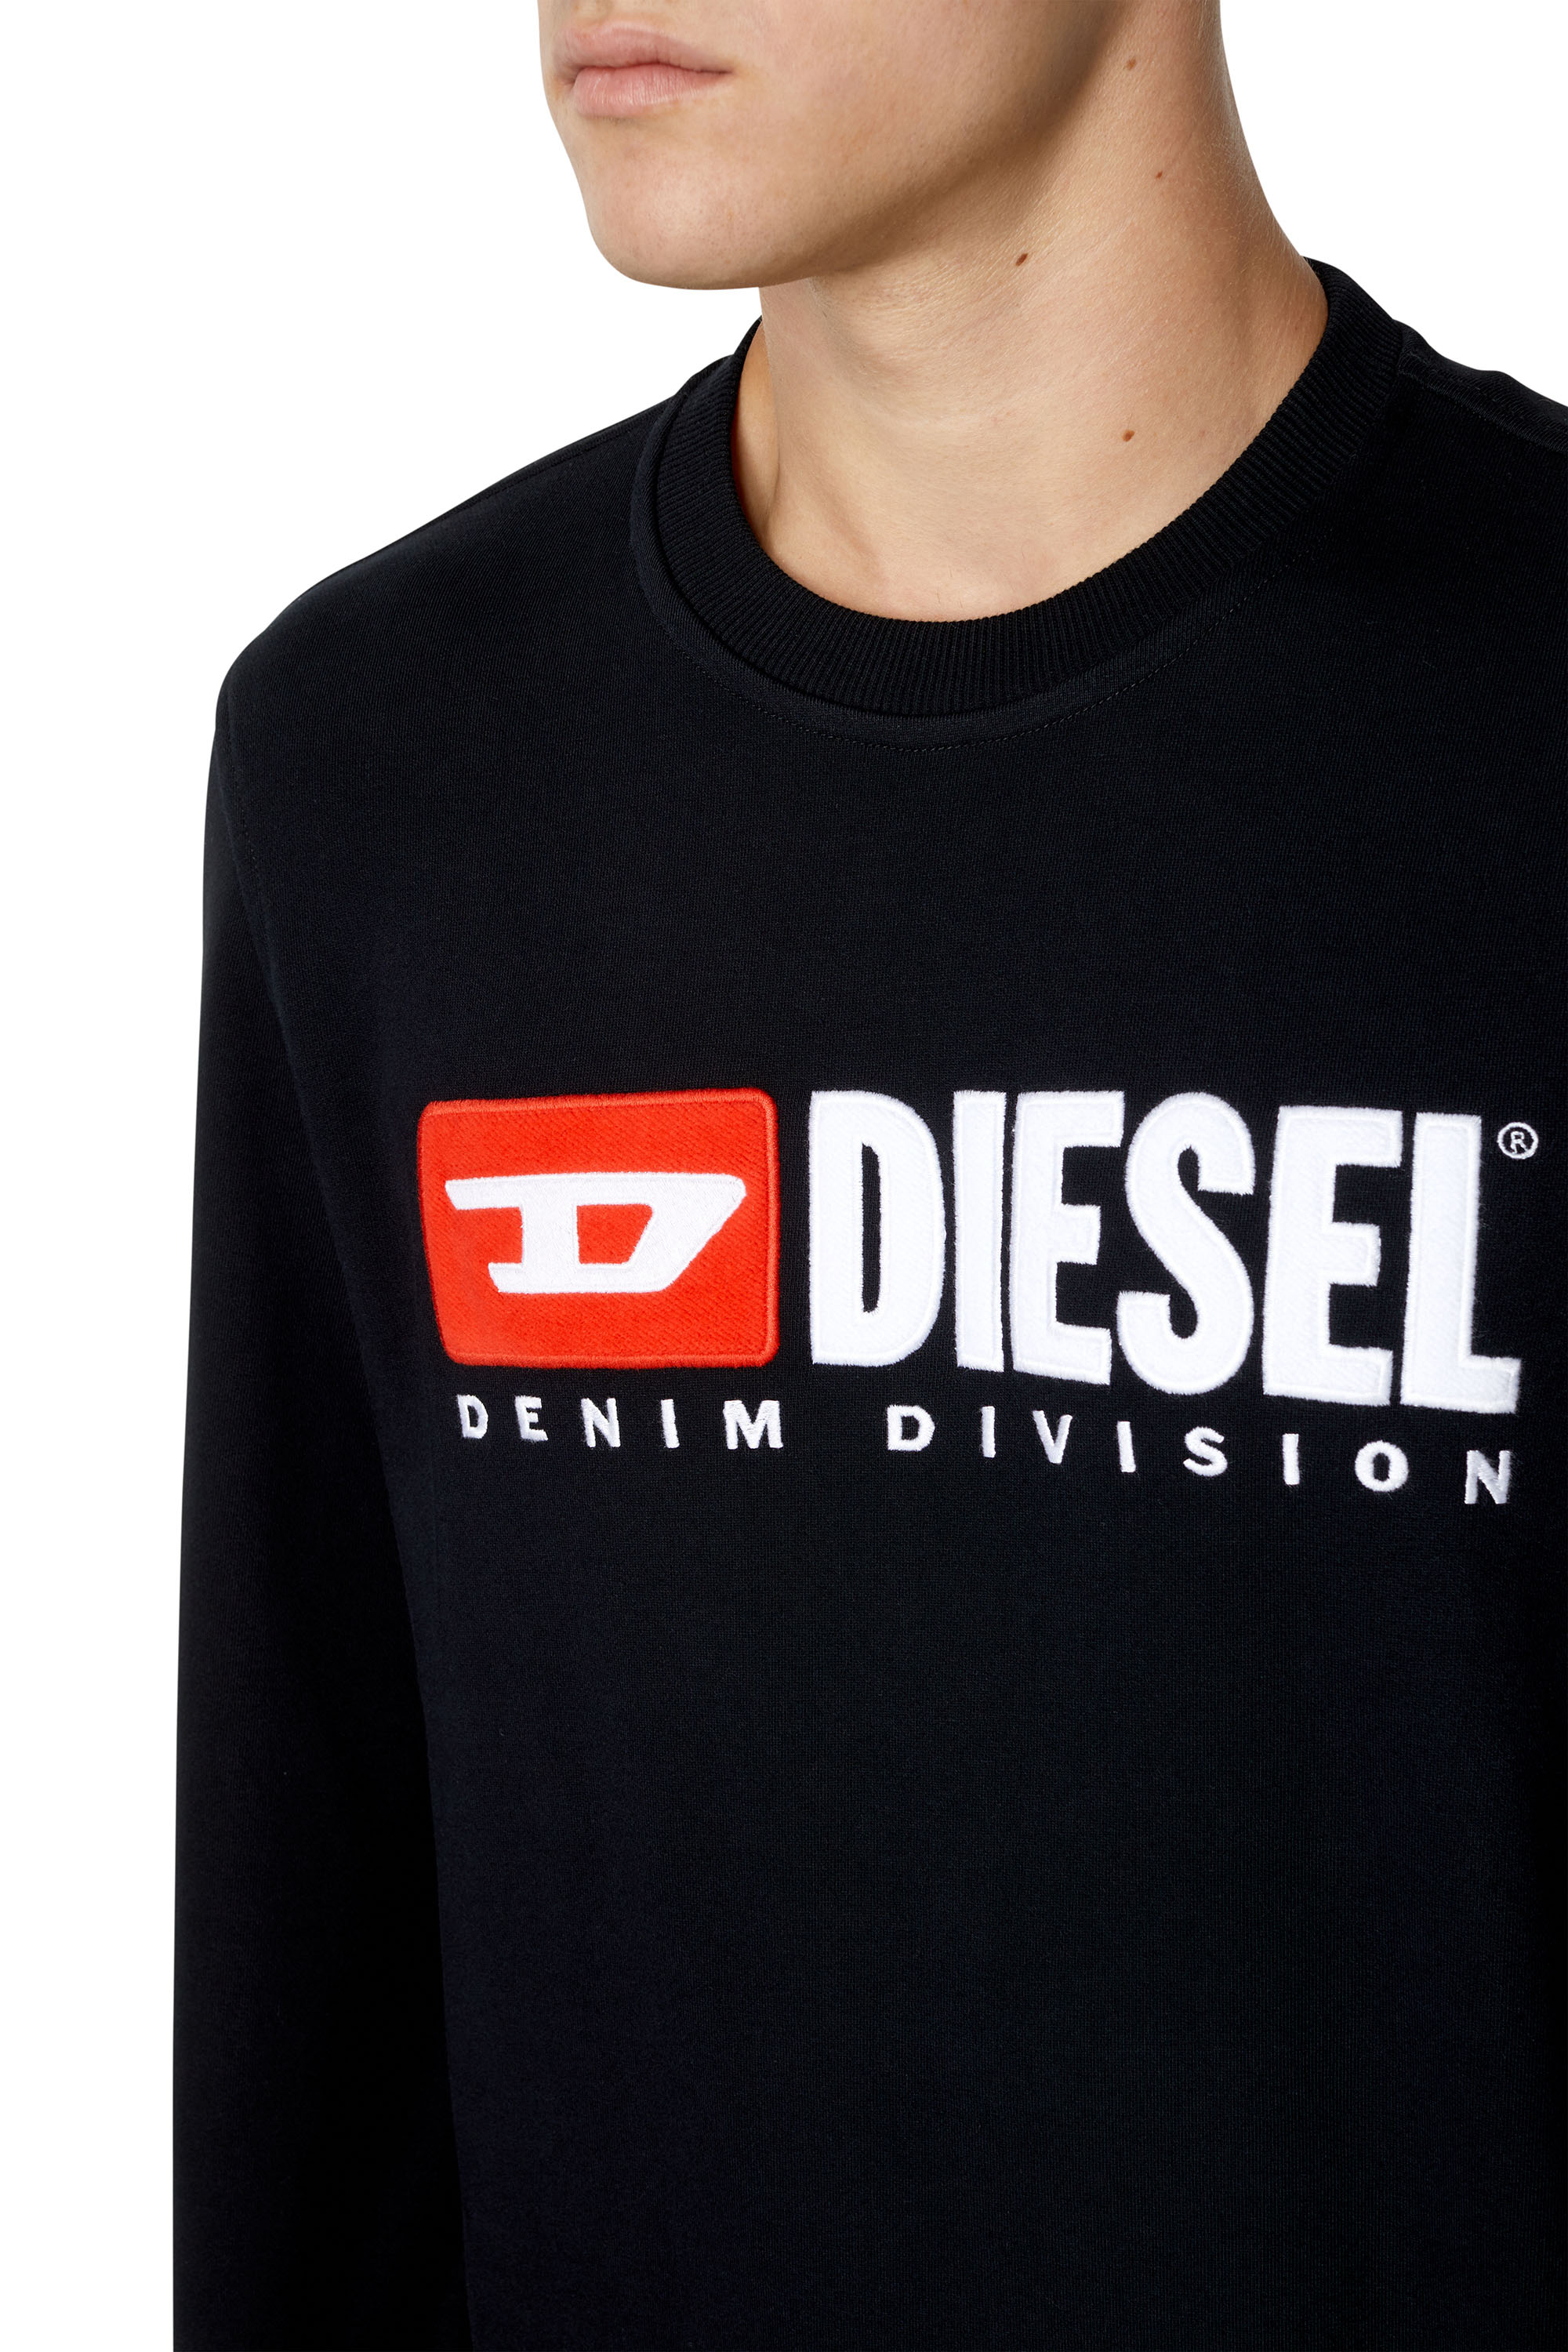 Diesel - S-GINN-DIV, Schwarz - Image 3